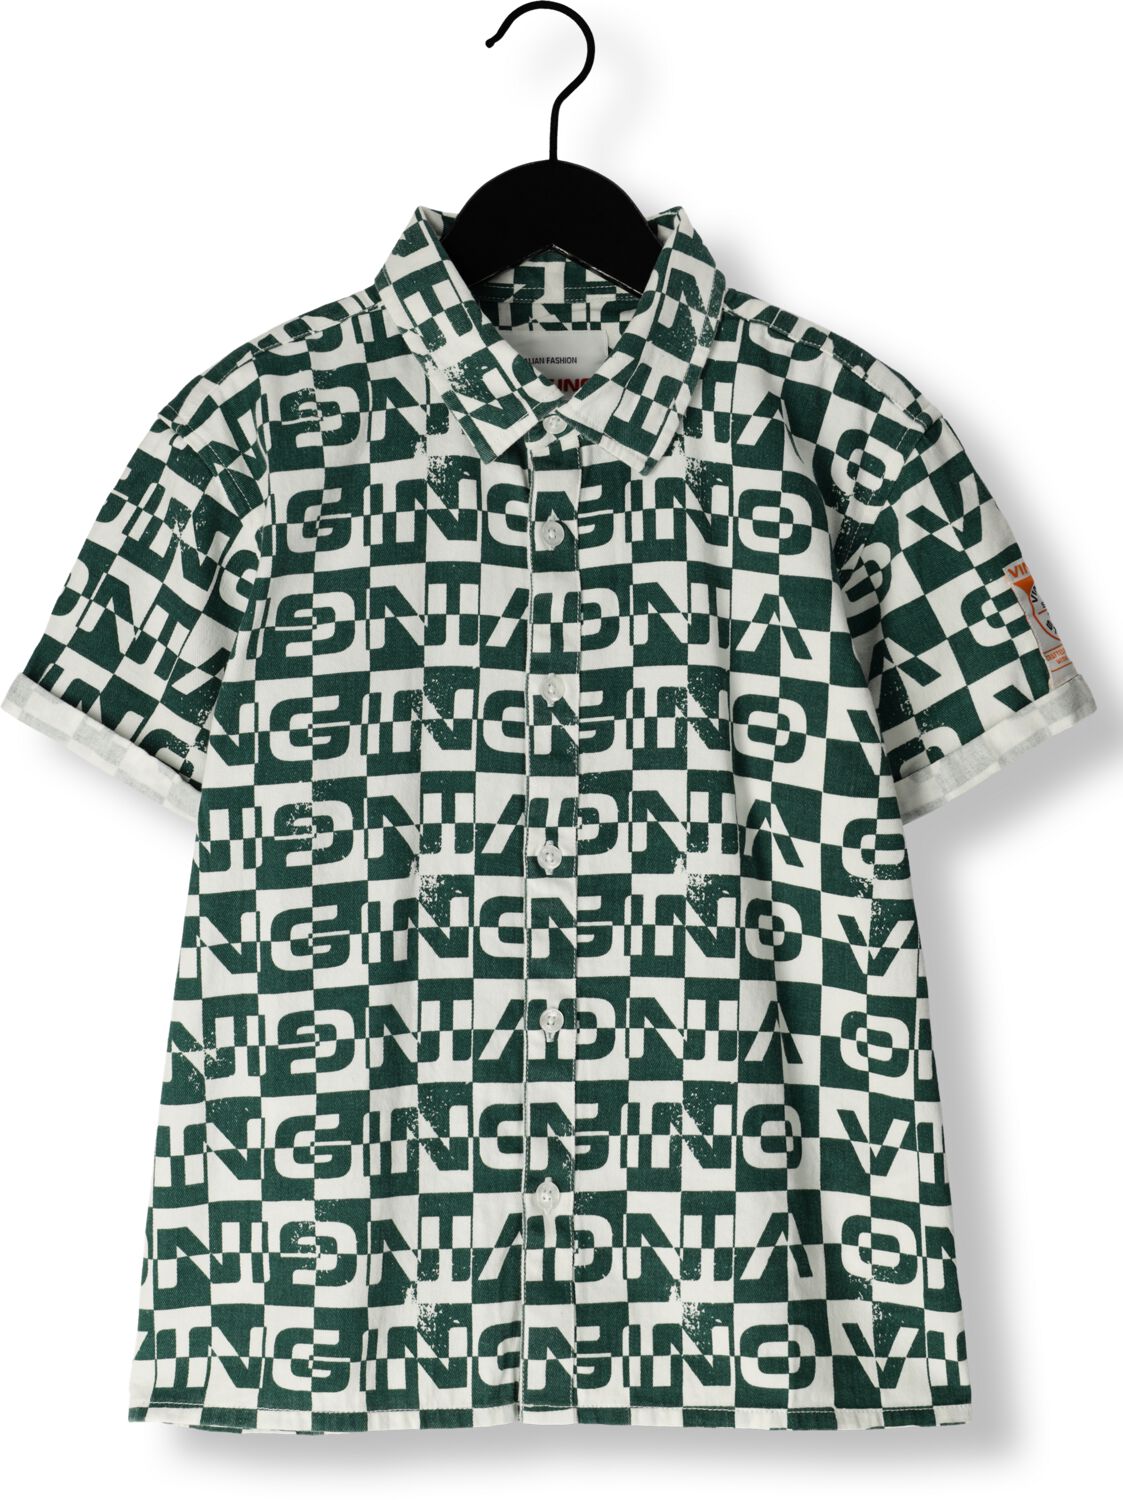 VINGINO overhemd Lampo met all over print groen wit Jongens Katoen Klassieke kraag 164